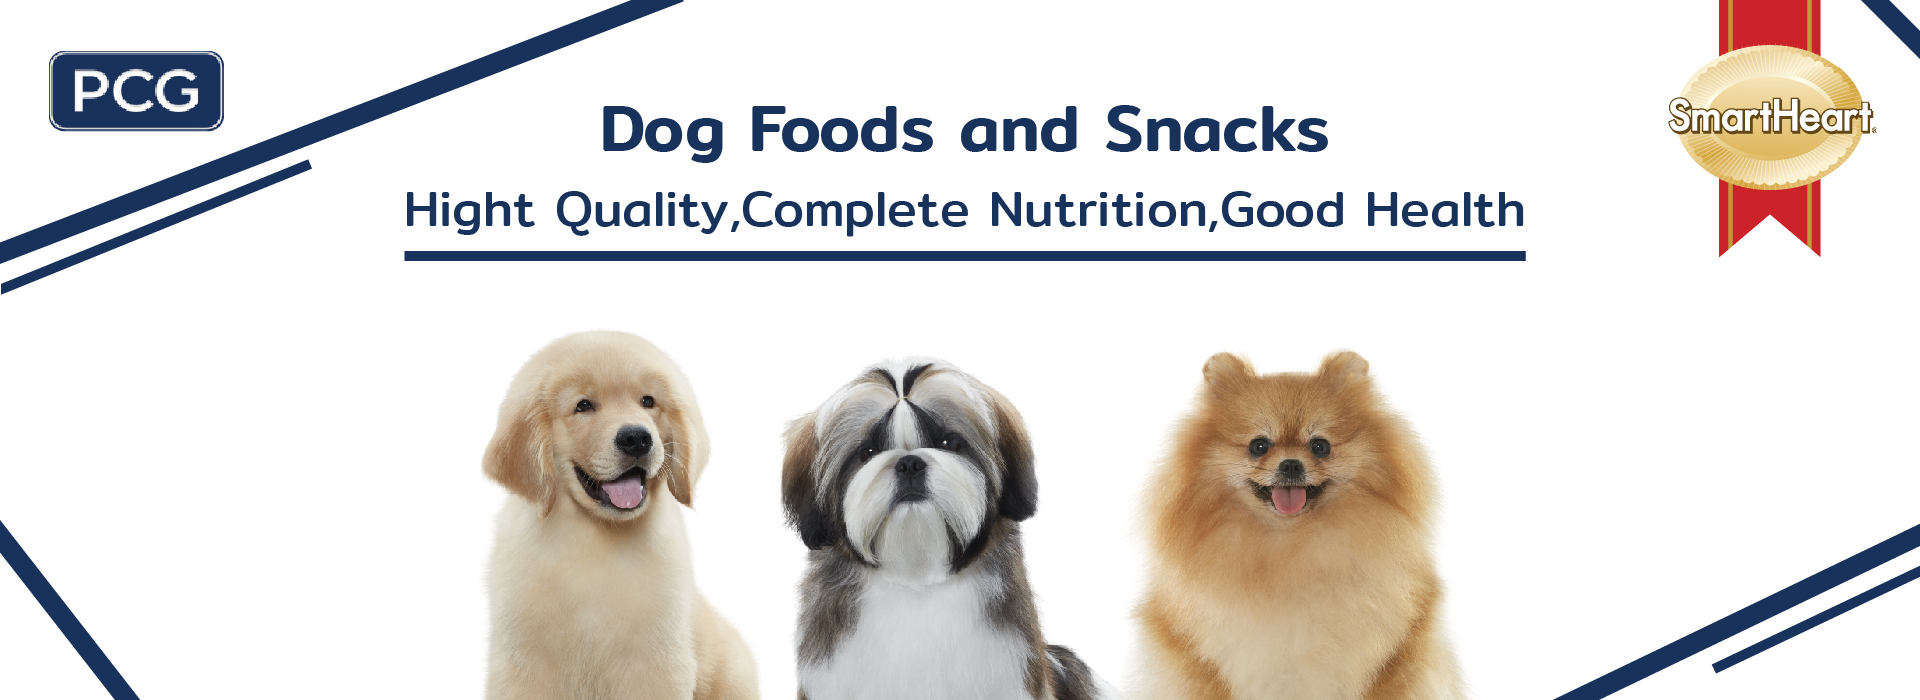 Dog food banner